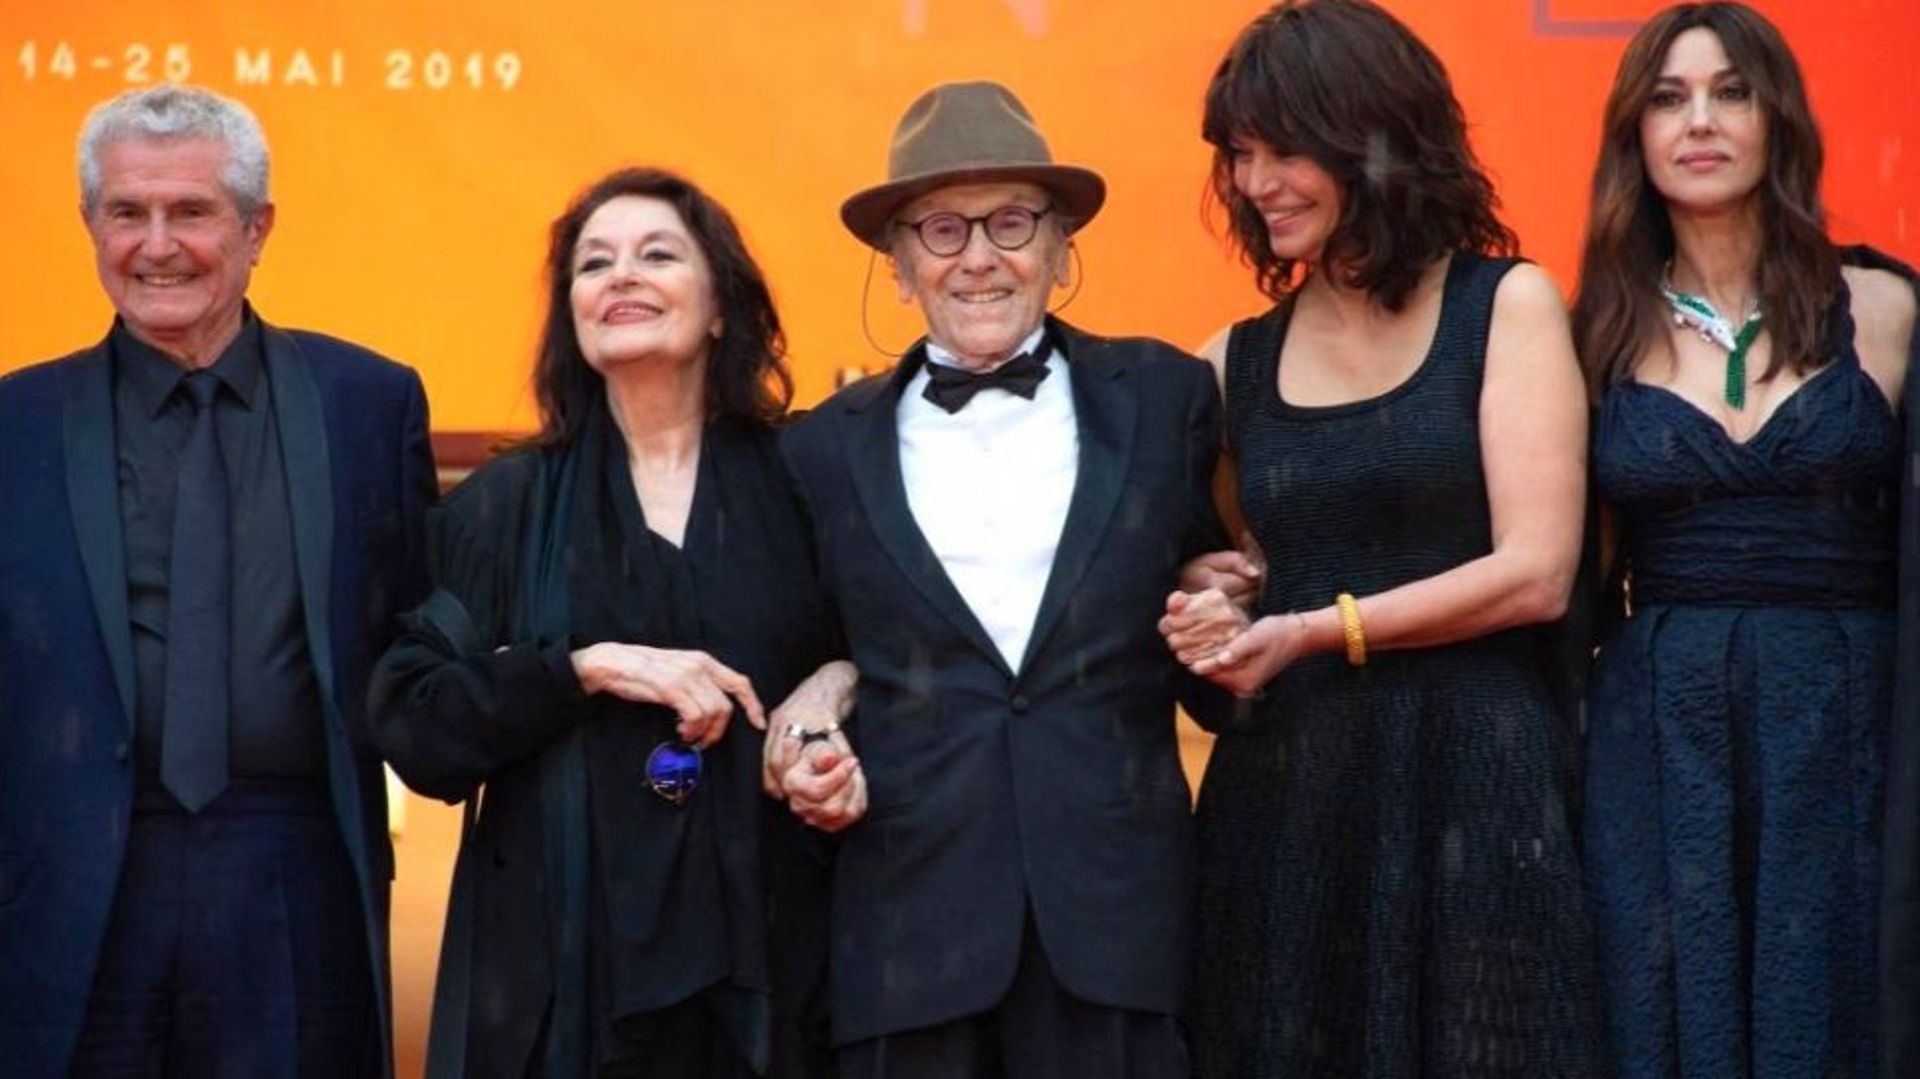 Claude Lelouch, Anouk Aimée, Jean-Louis Trintignant et Monica Bellucci au festival de Cannes 2019